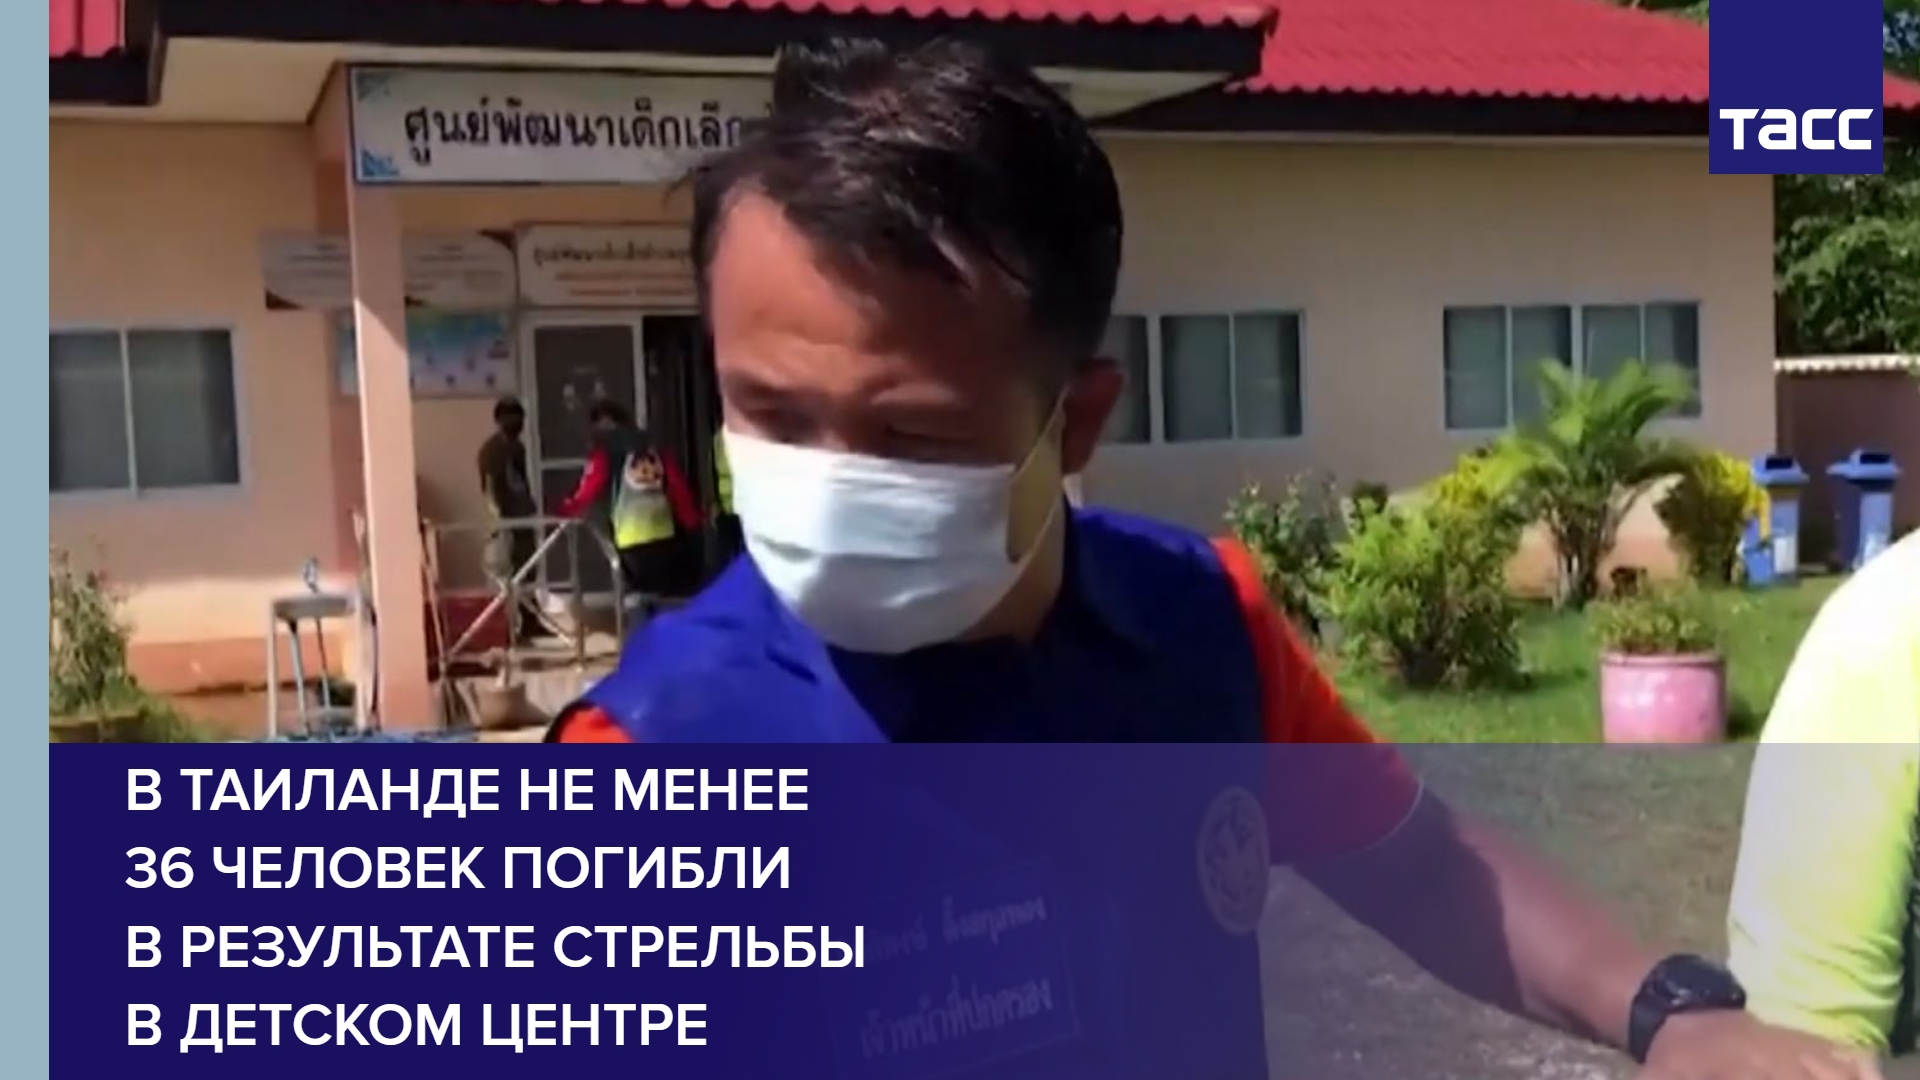 В Таиланде не менее 36 человек погибли в результате стрельбы в детском центре #shorts